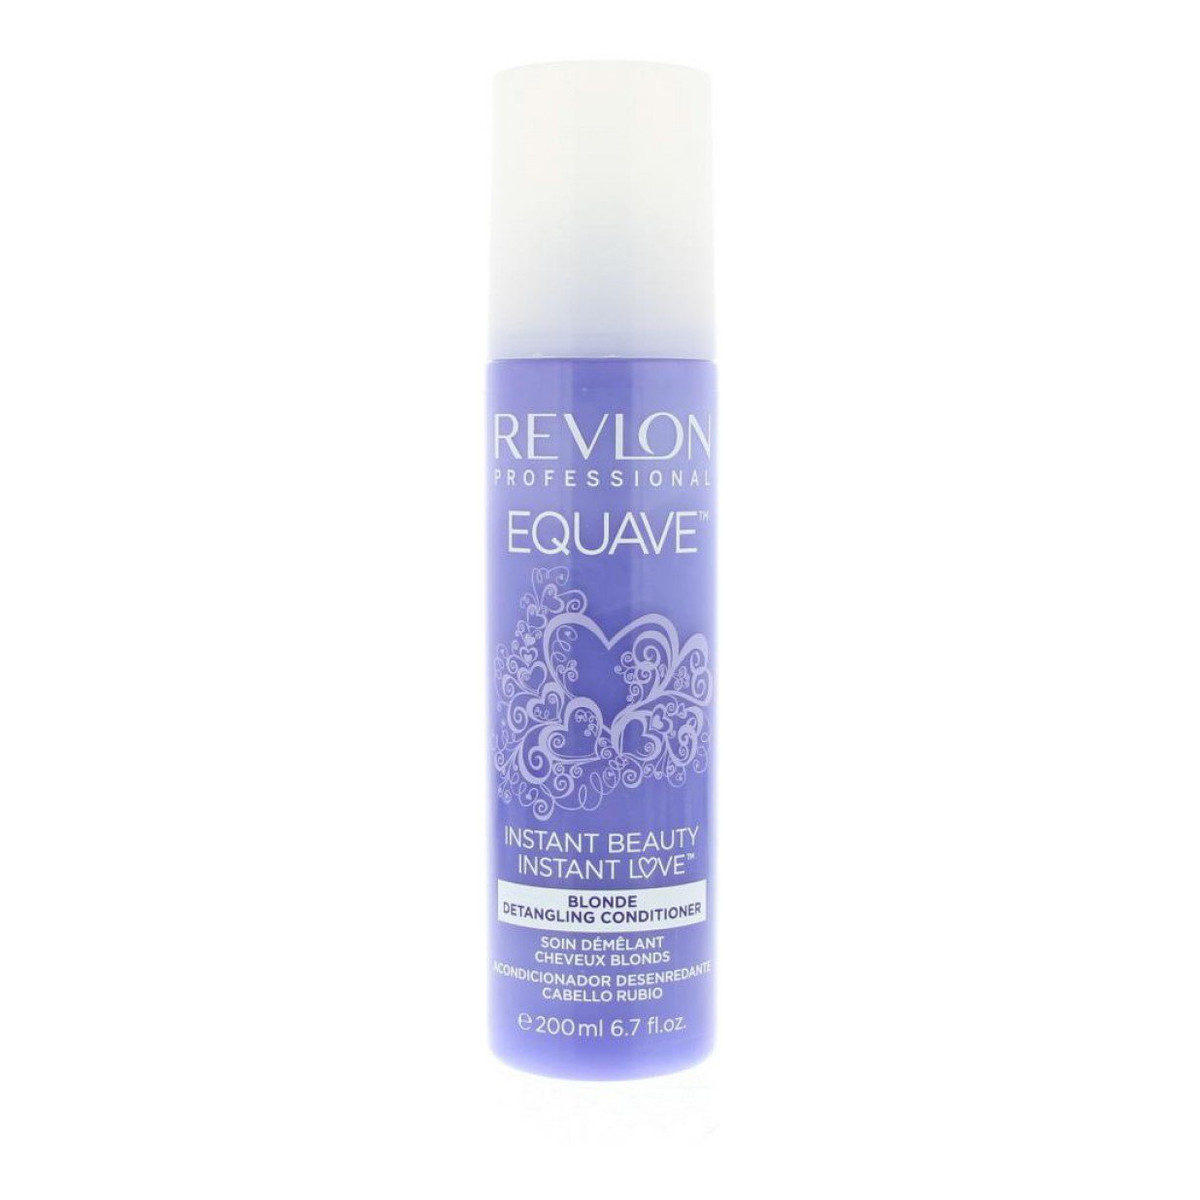 Revlon Professional Equave Odżywka ułatwiająca rozczesywanie do włosów blond 200ml